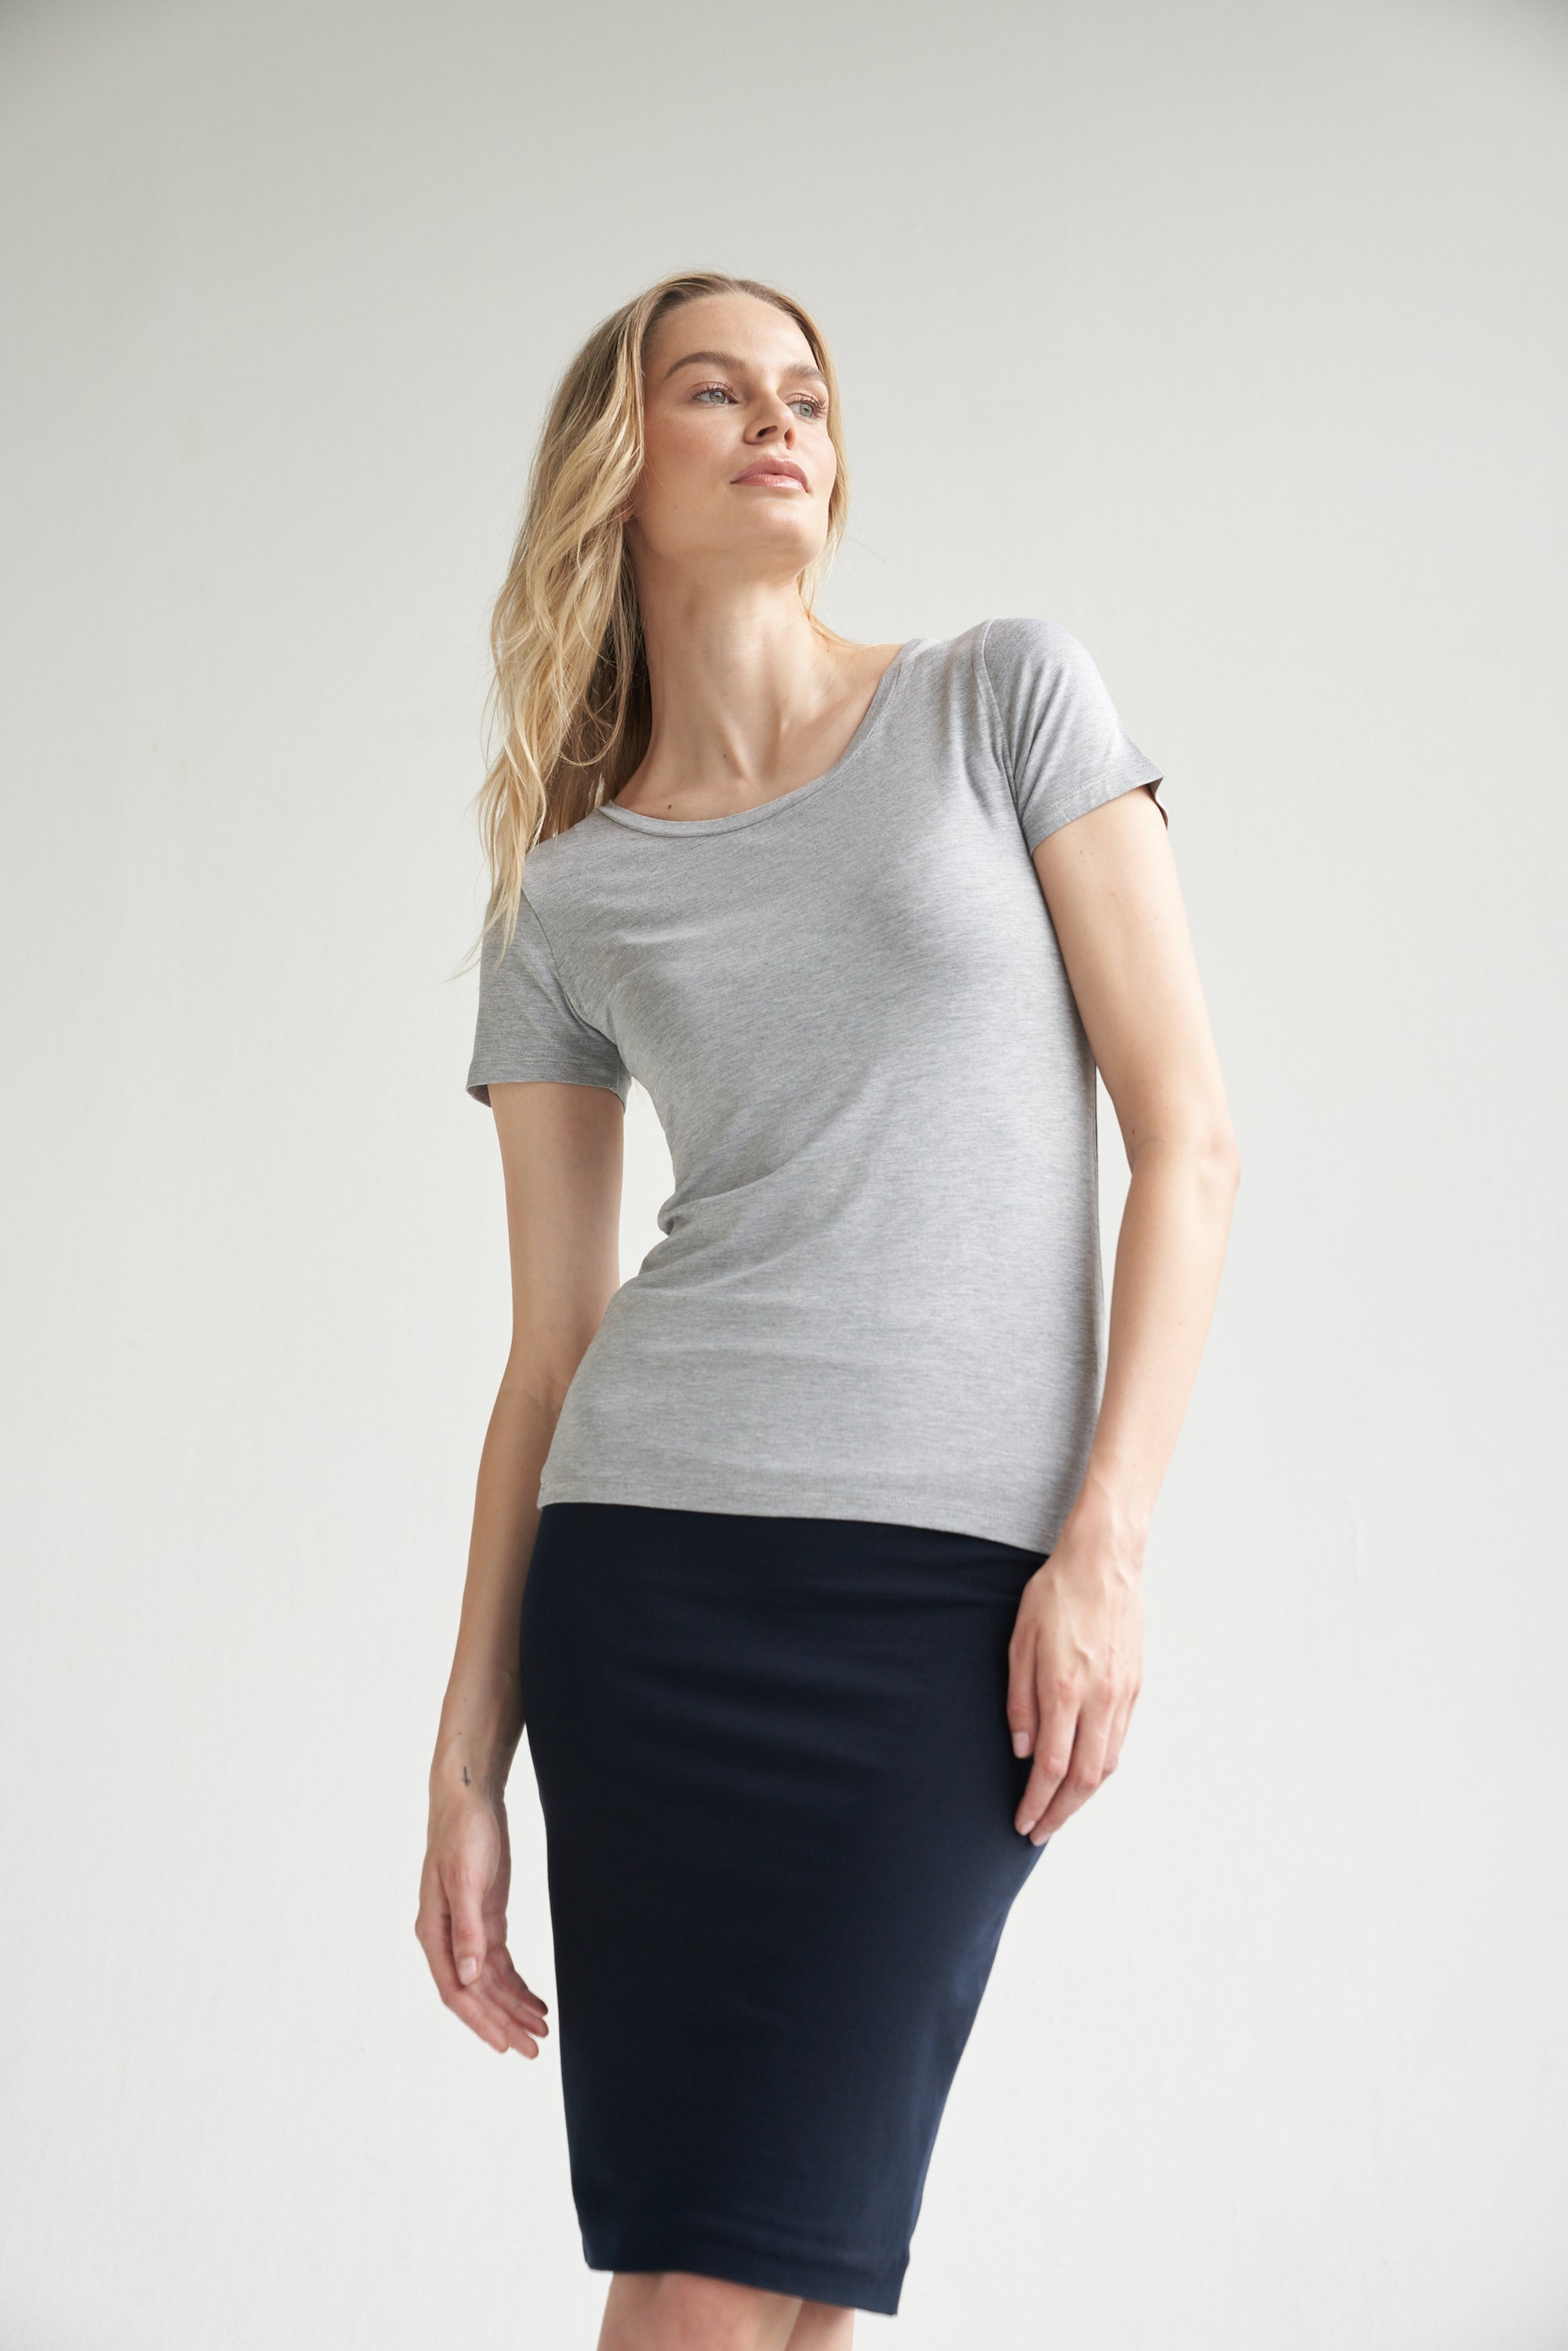 Graues T-Shirt kombiniert mit einem dunkelblauen Bleistiftrock wird von einem blonden Model getragen.  